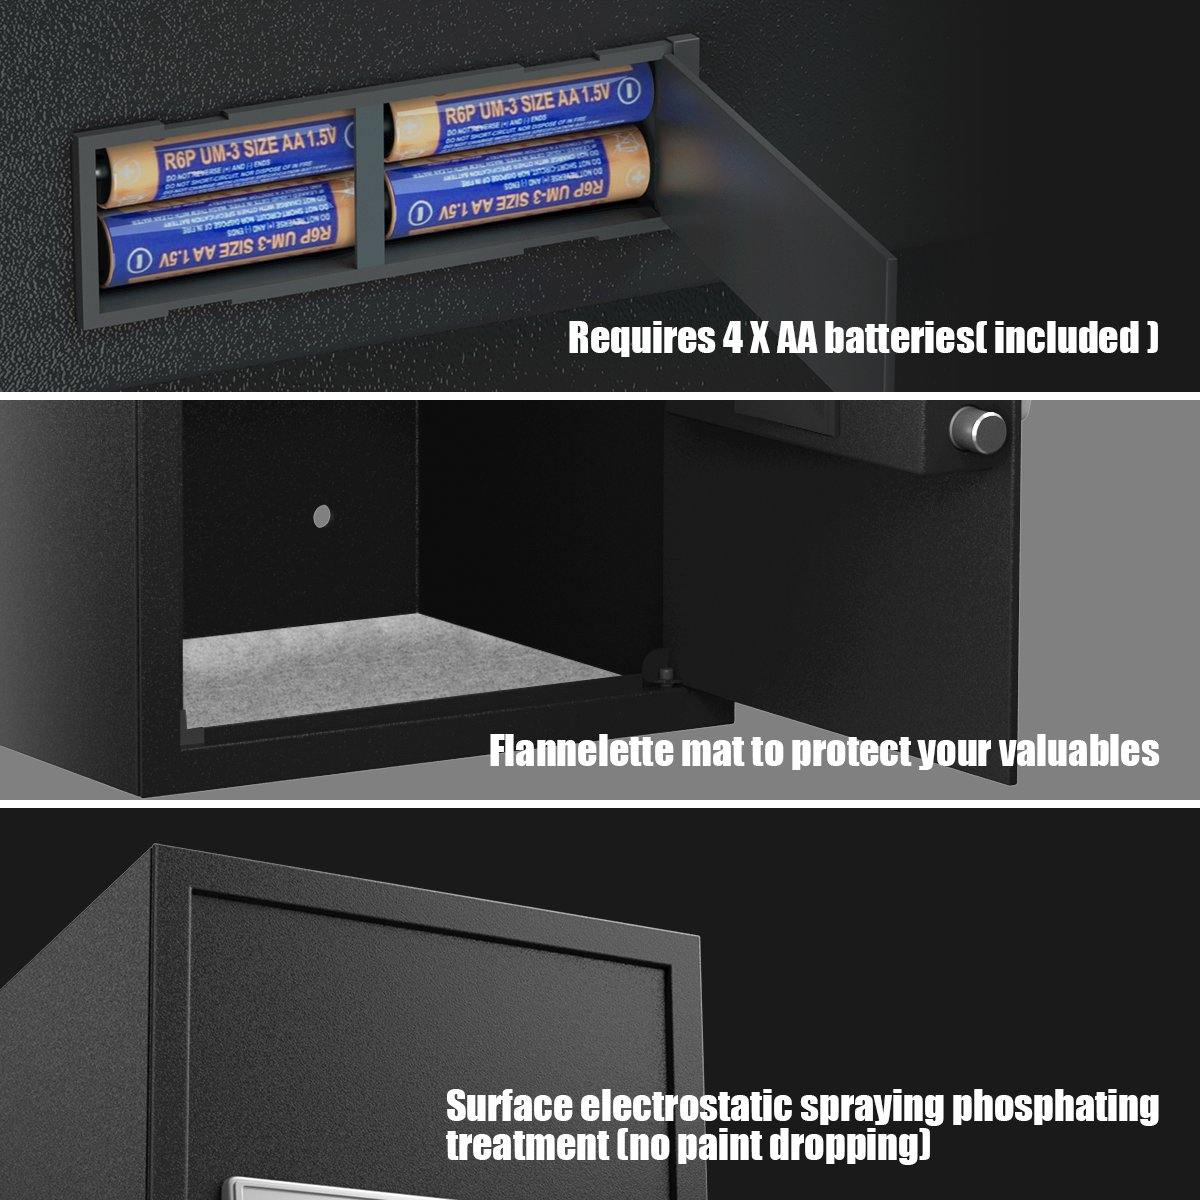 Large Digital Electronic Safe Box Keypad Lock Security - Giantexus